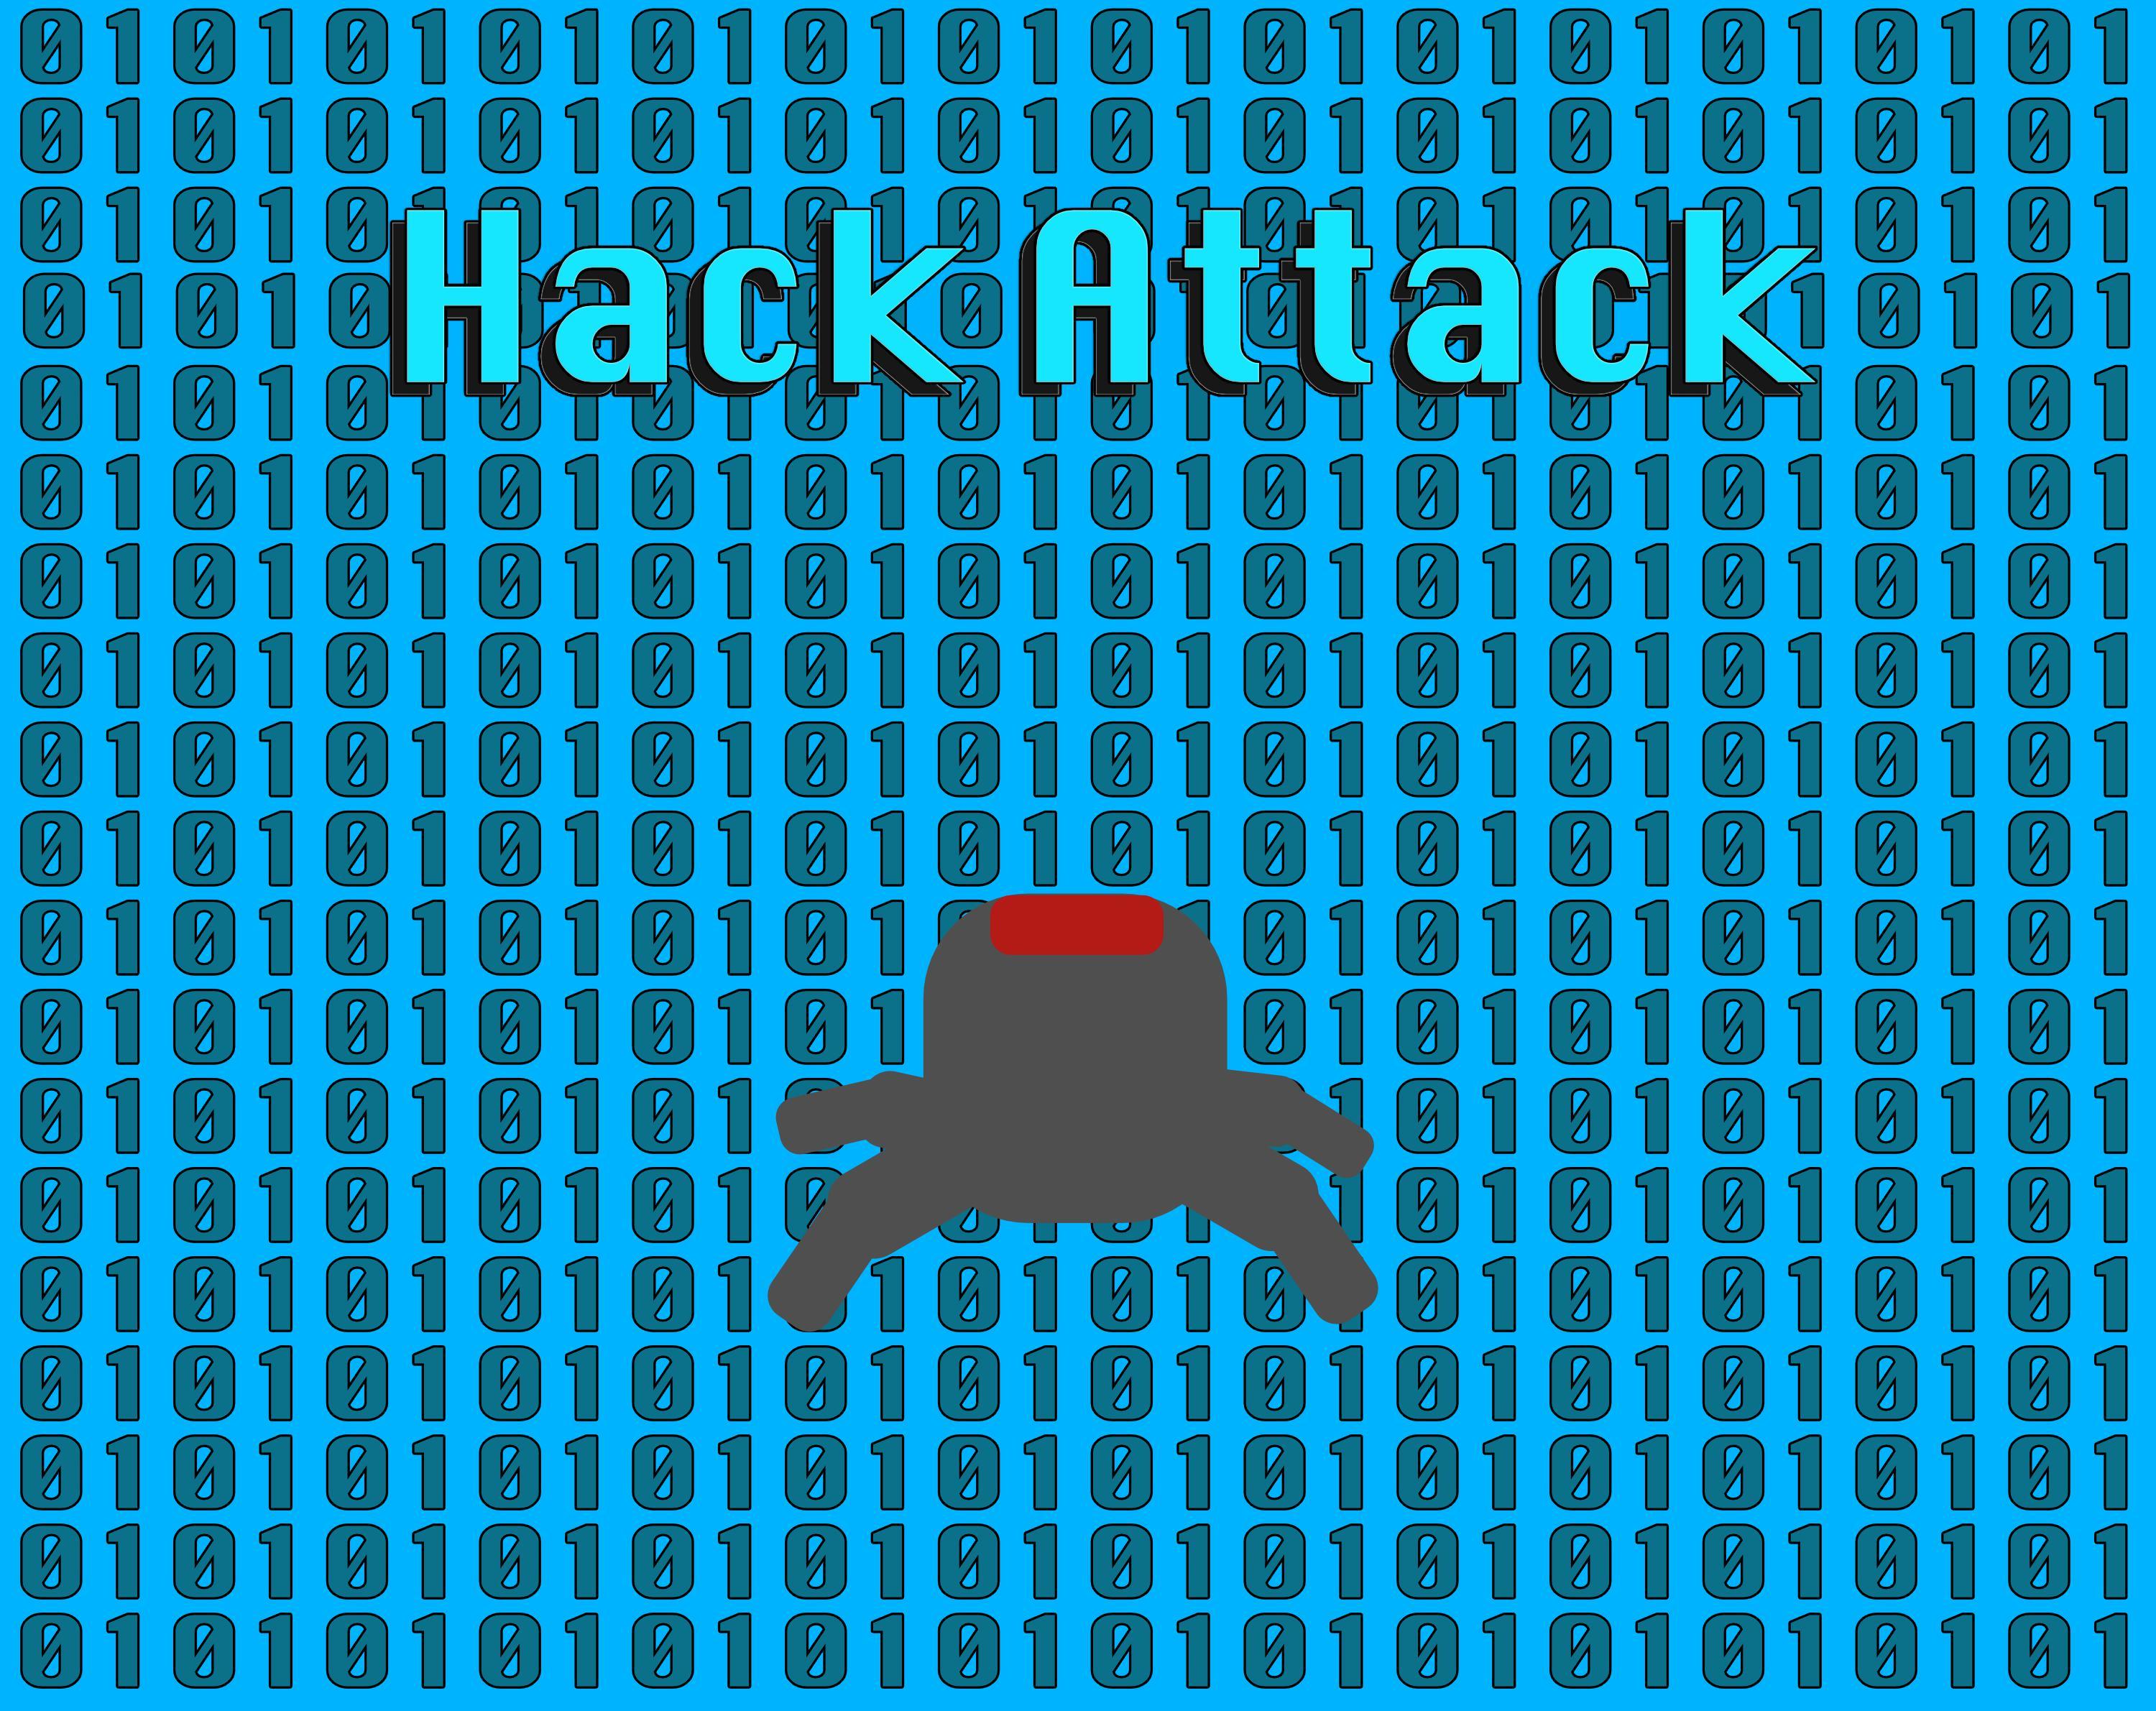 roblox hack 2018 100 working online hack tool